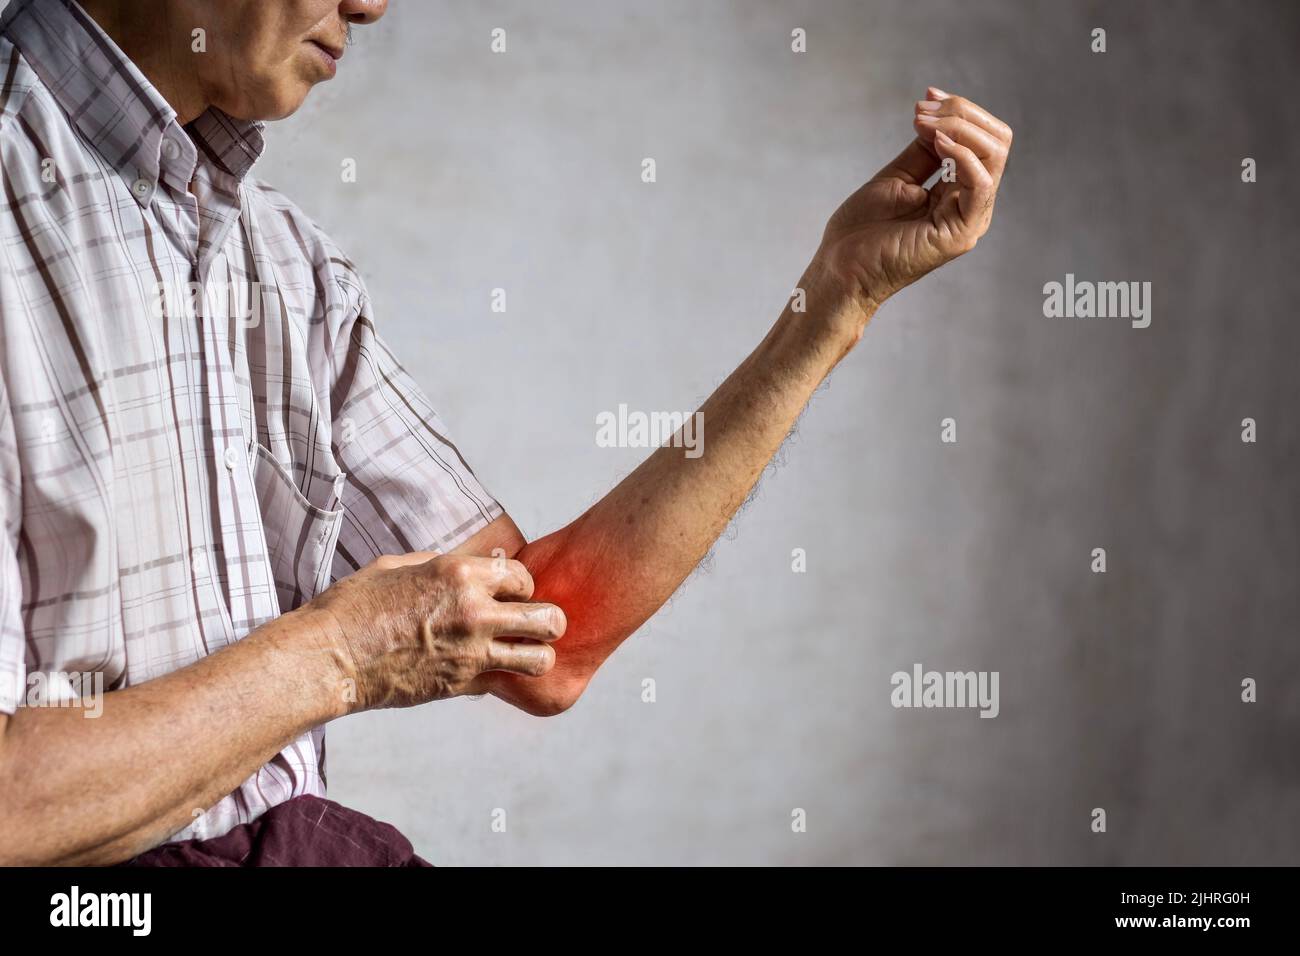 Homme asiatique aîné se grattant le bras. Concept de maladies de la peau qui démangent telles que la gale, l'infection fongique, l'eczéma, le psoriasis, l'allergie, etc Banque D'Images